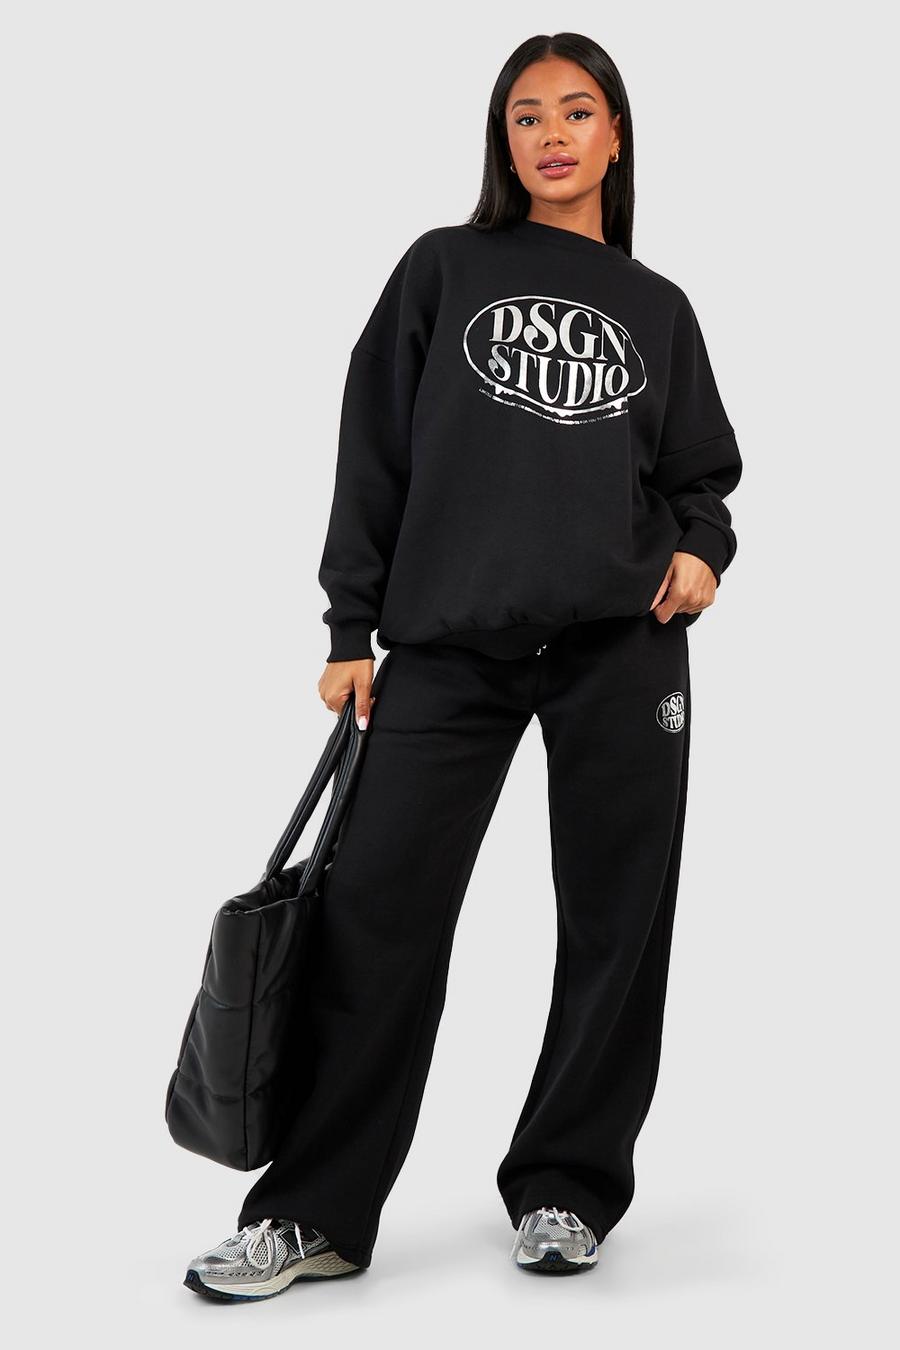 Pantalón deportivo recto con estampado Dsgn Studio, Black